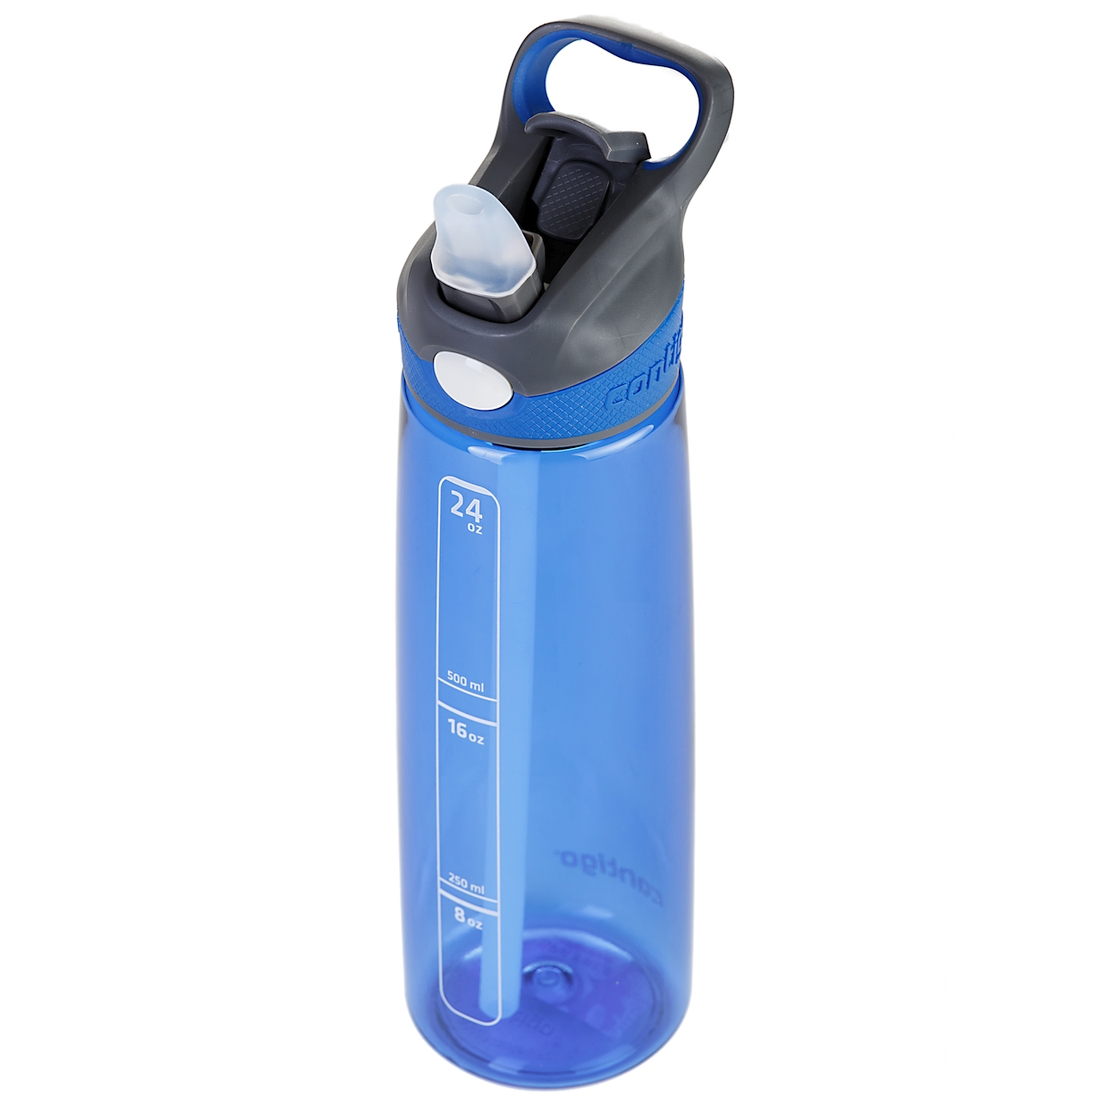 Спортивная бутылка для питья Addison, синий (Contigo contigo0081)